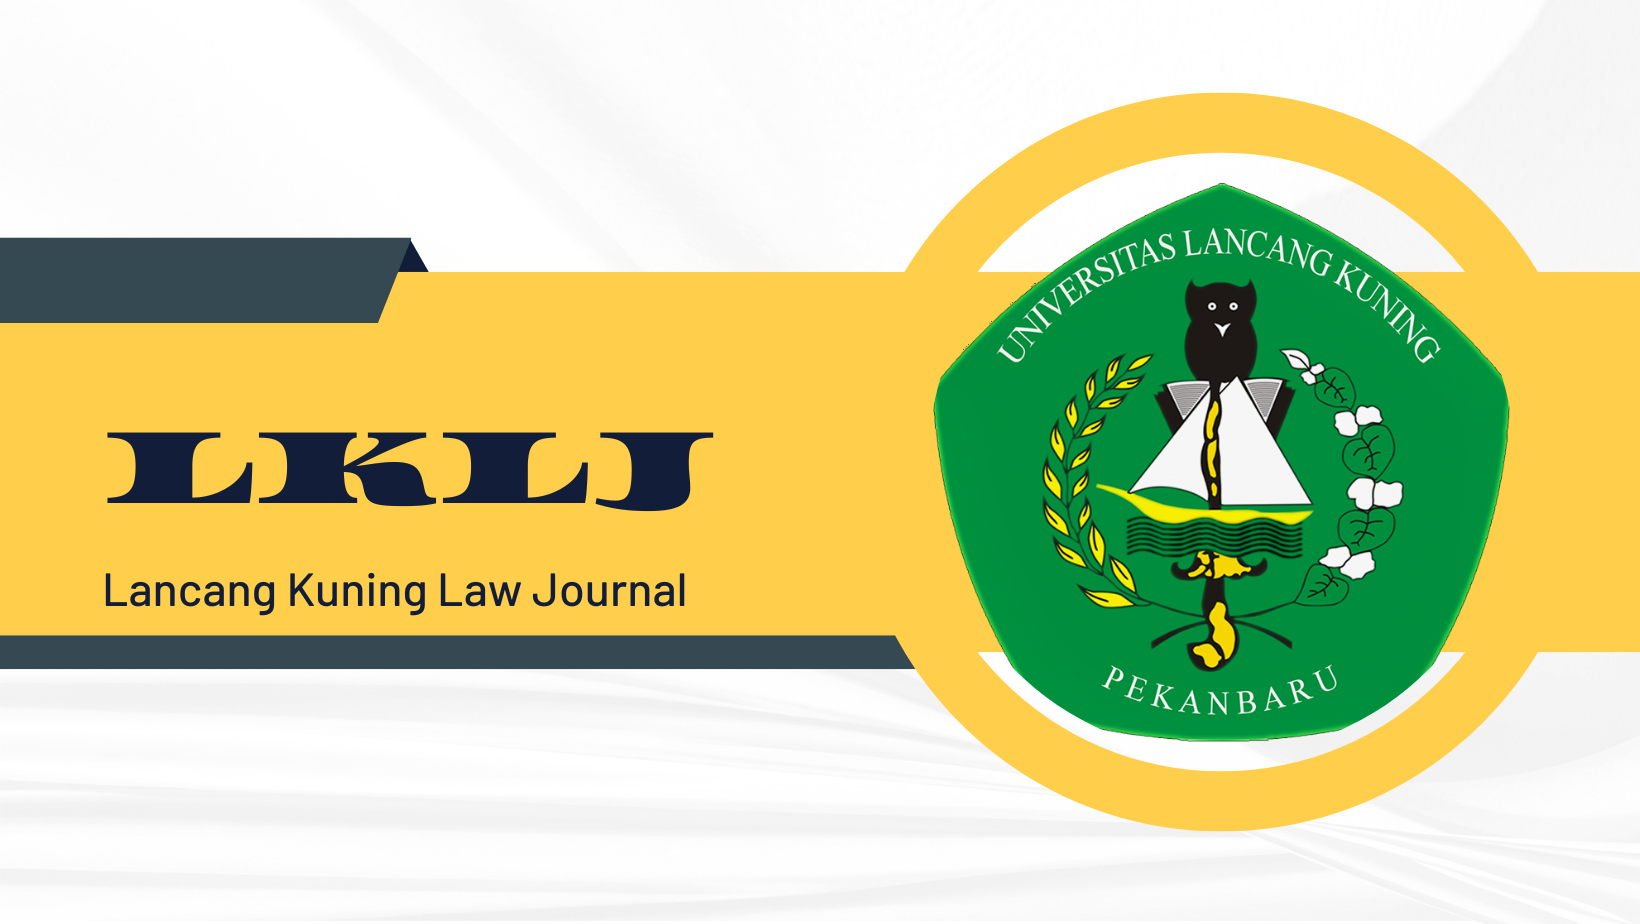 Lancang Kuning Law Journal